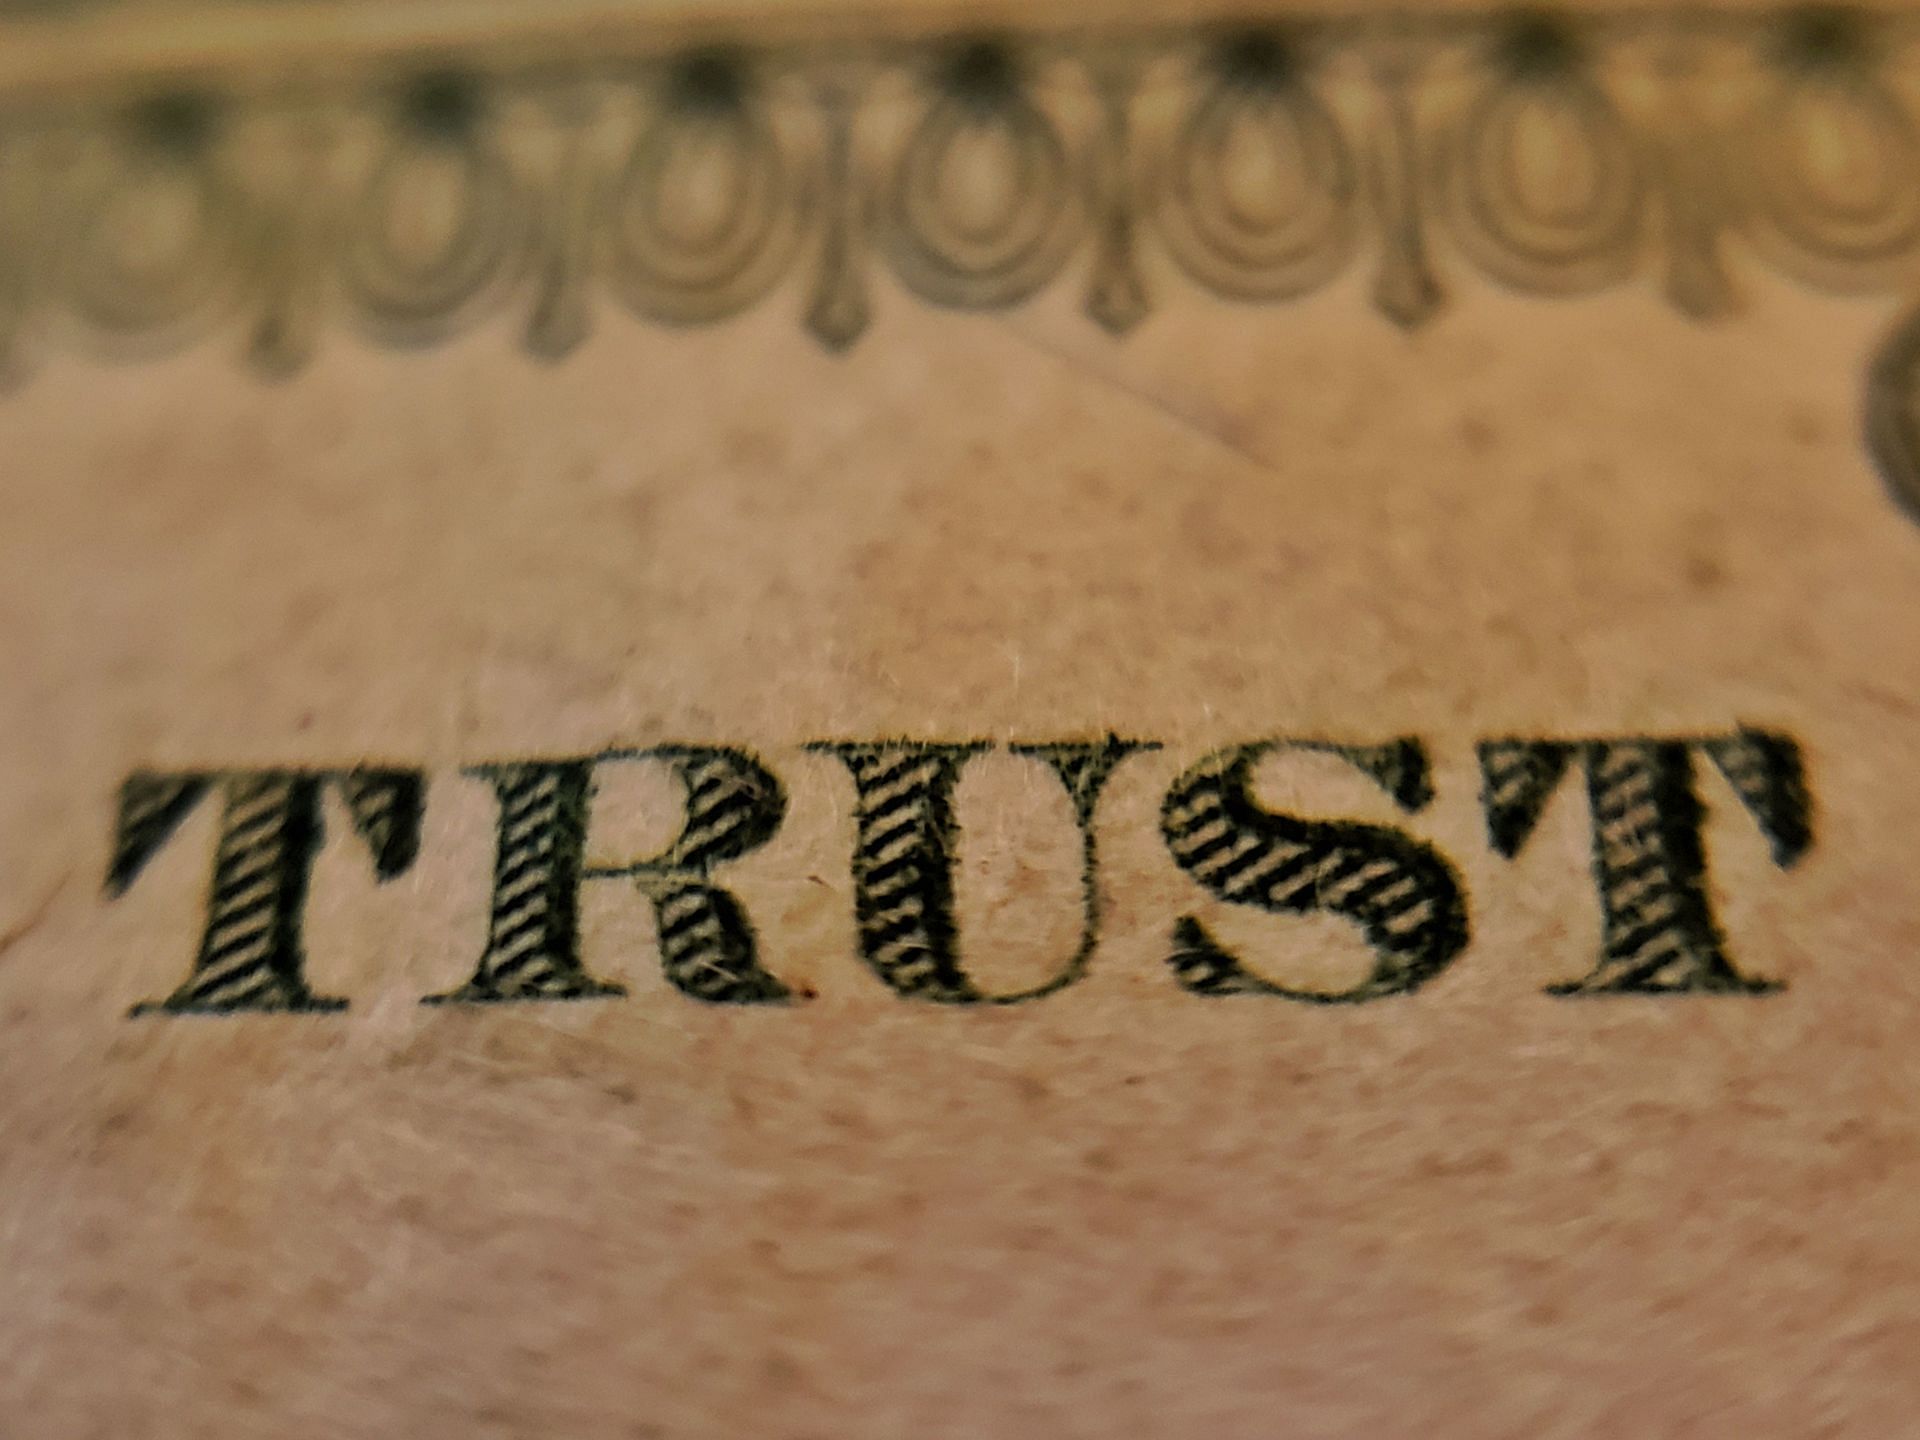 Builds trust (Image via Unsplash/Joshua Hoehne)